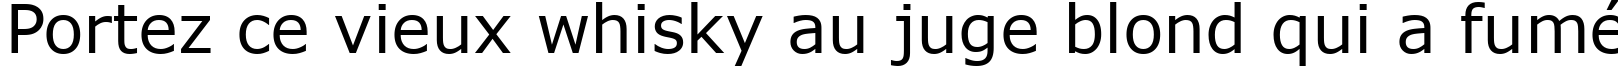 Пример написания шрифтом font228 текста на французском